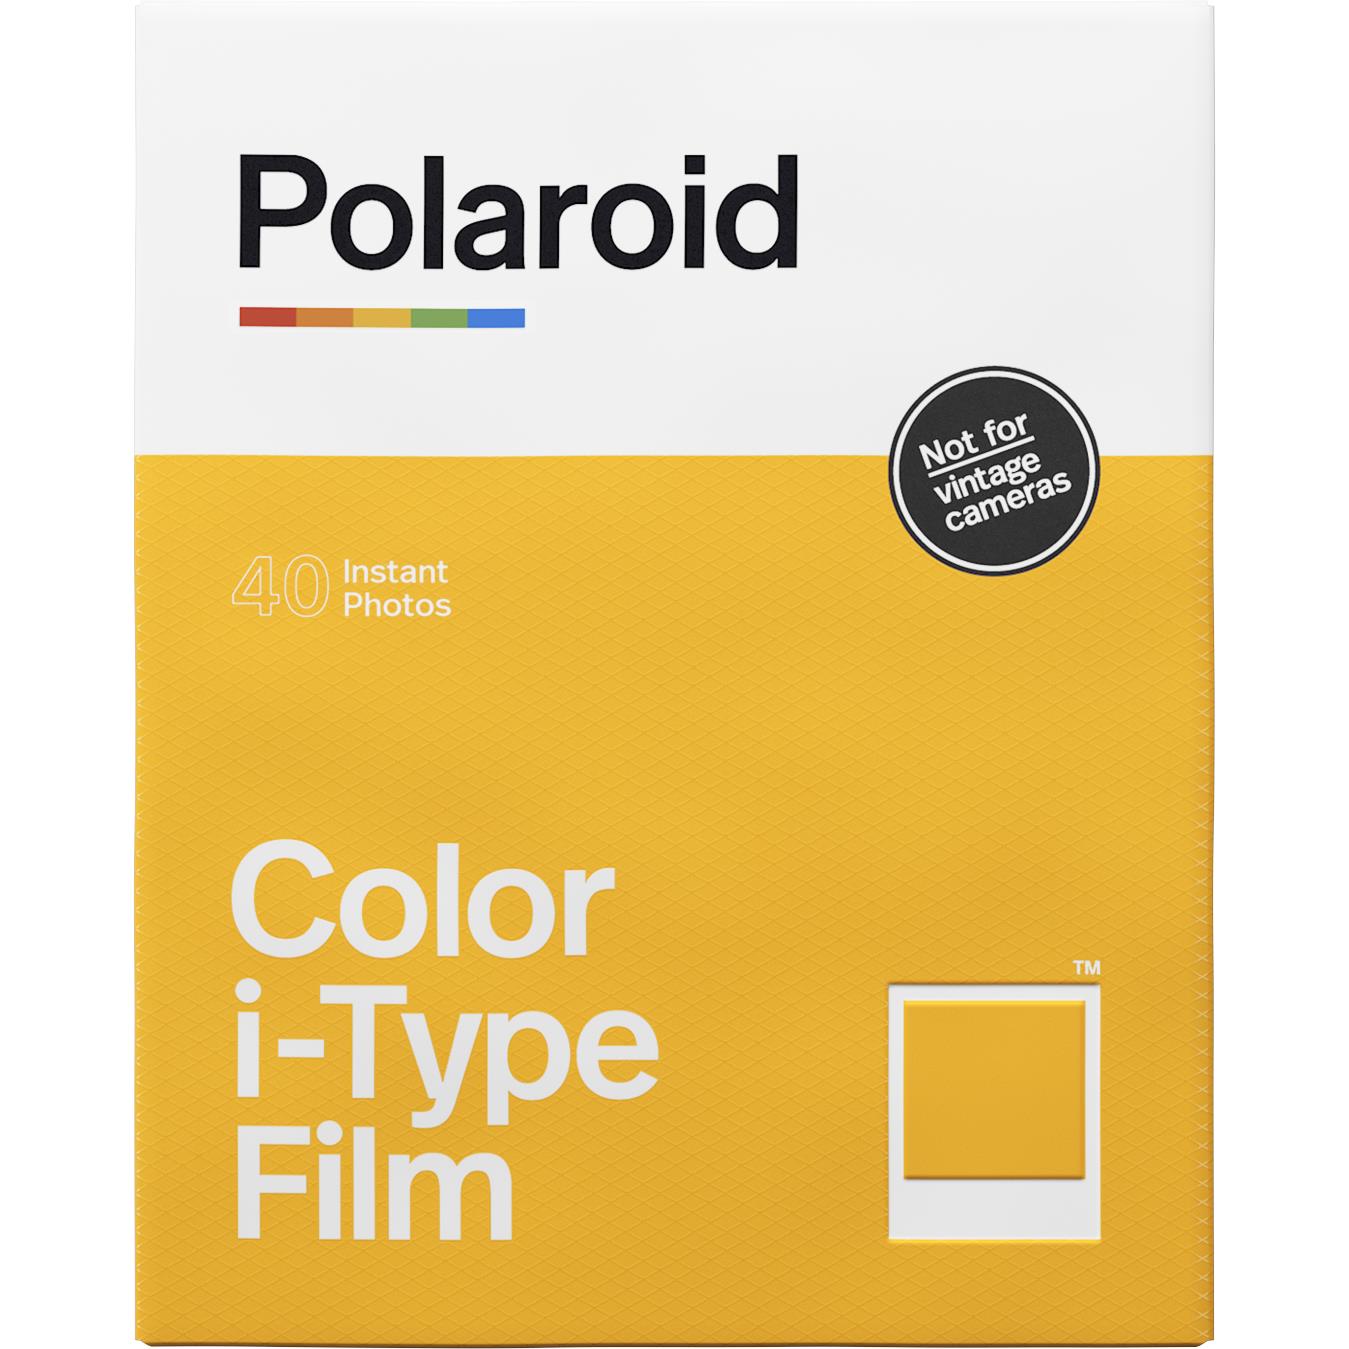 Polaroid Film Couleur pour 600 - x40 Film Pack